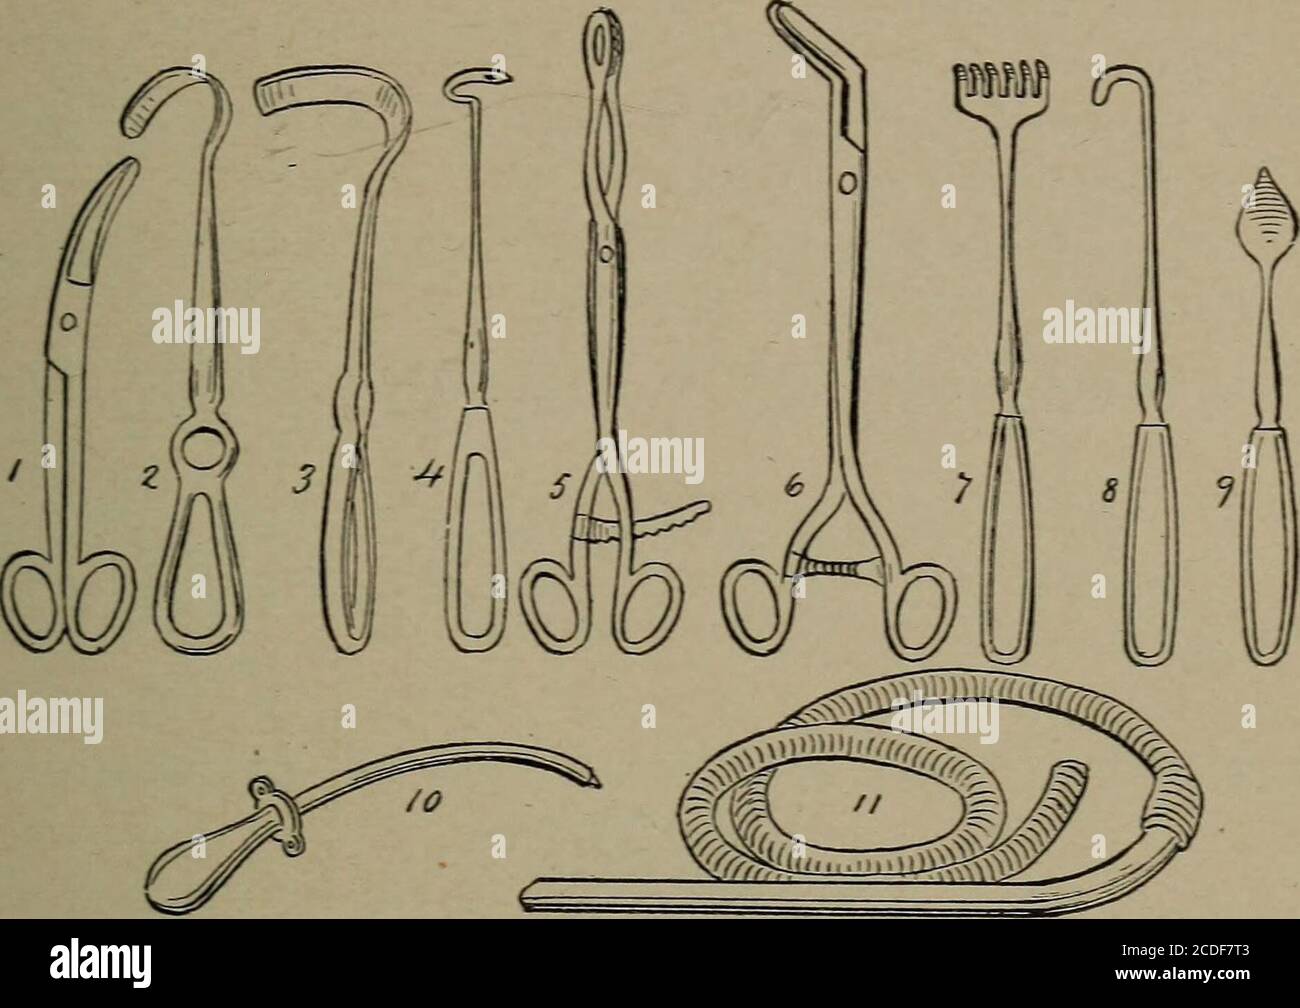 Un manual de referencia de ginecología para enfermeras. Ion of Instruments,  Needles, y Suture material.—estos son preparados por el supervisor  quirúrgico. Envuelve el cuchillo-bladesin algodón, enrosca las agujas a  través de